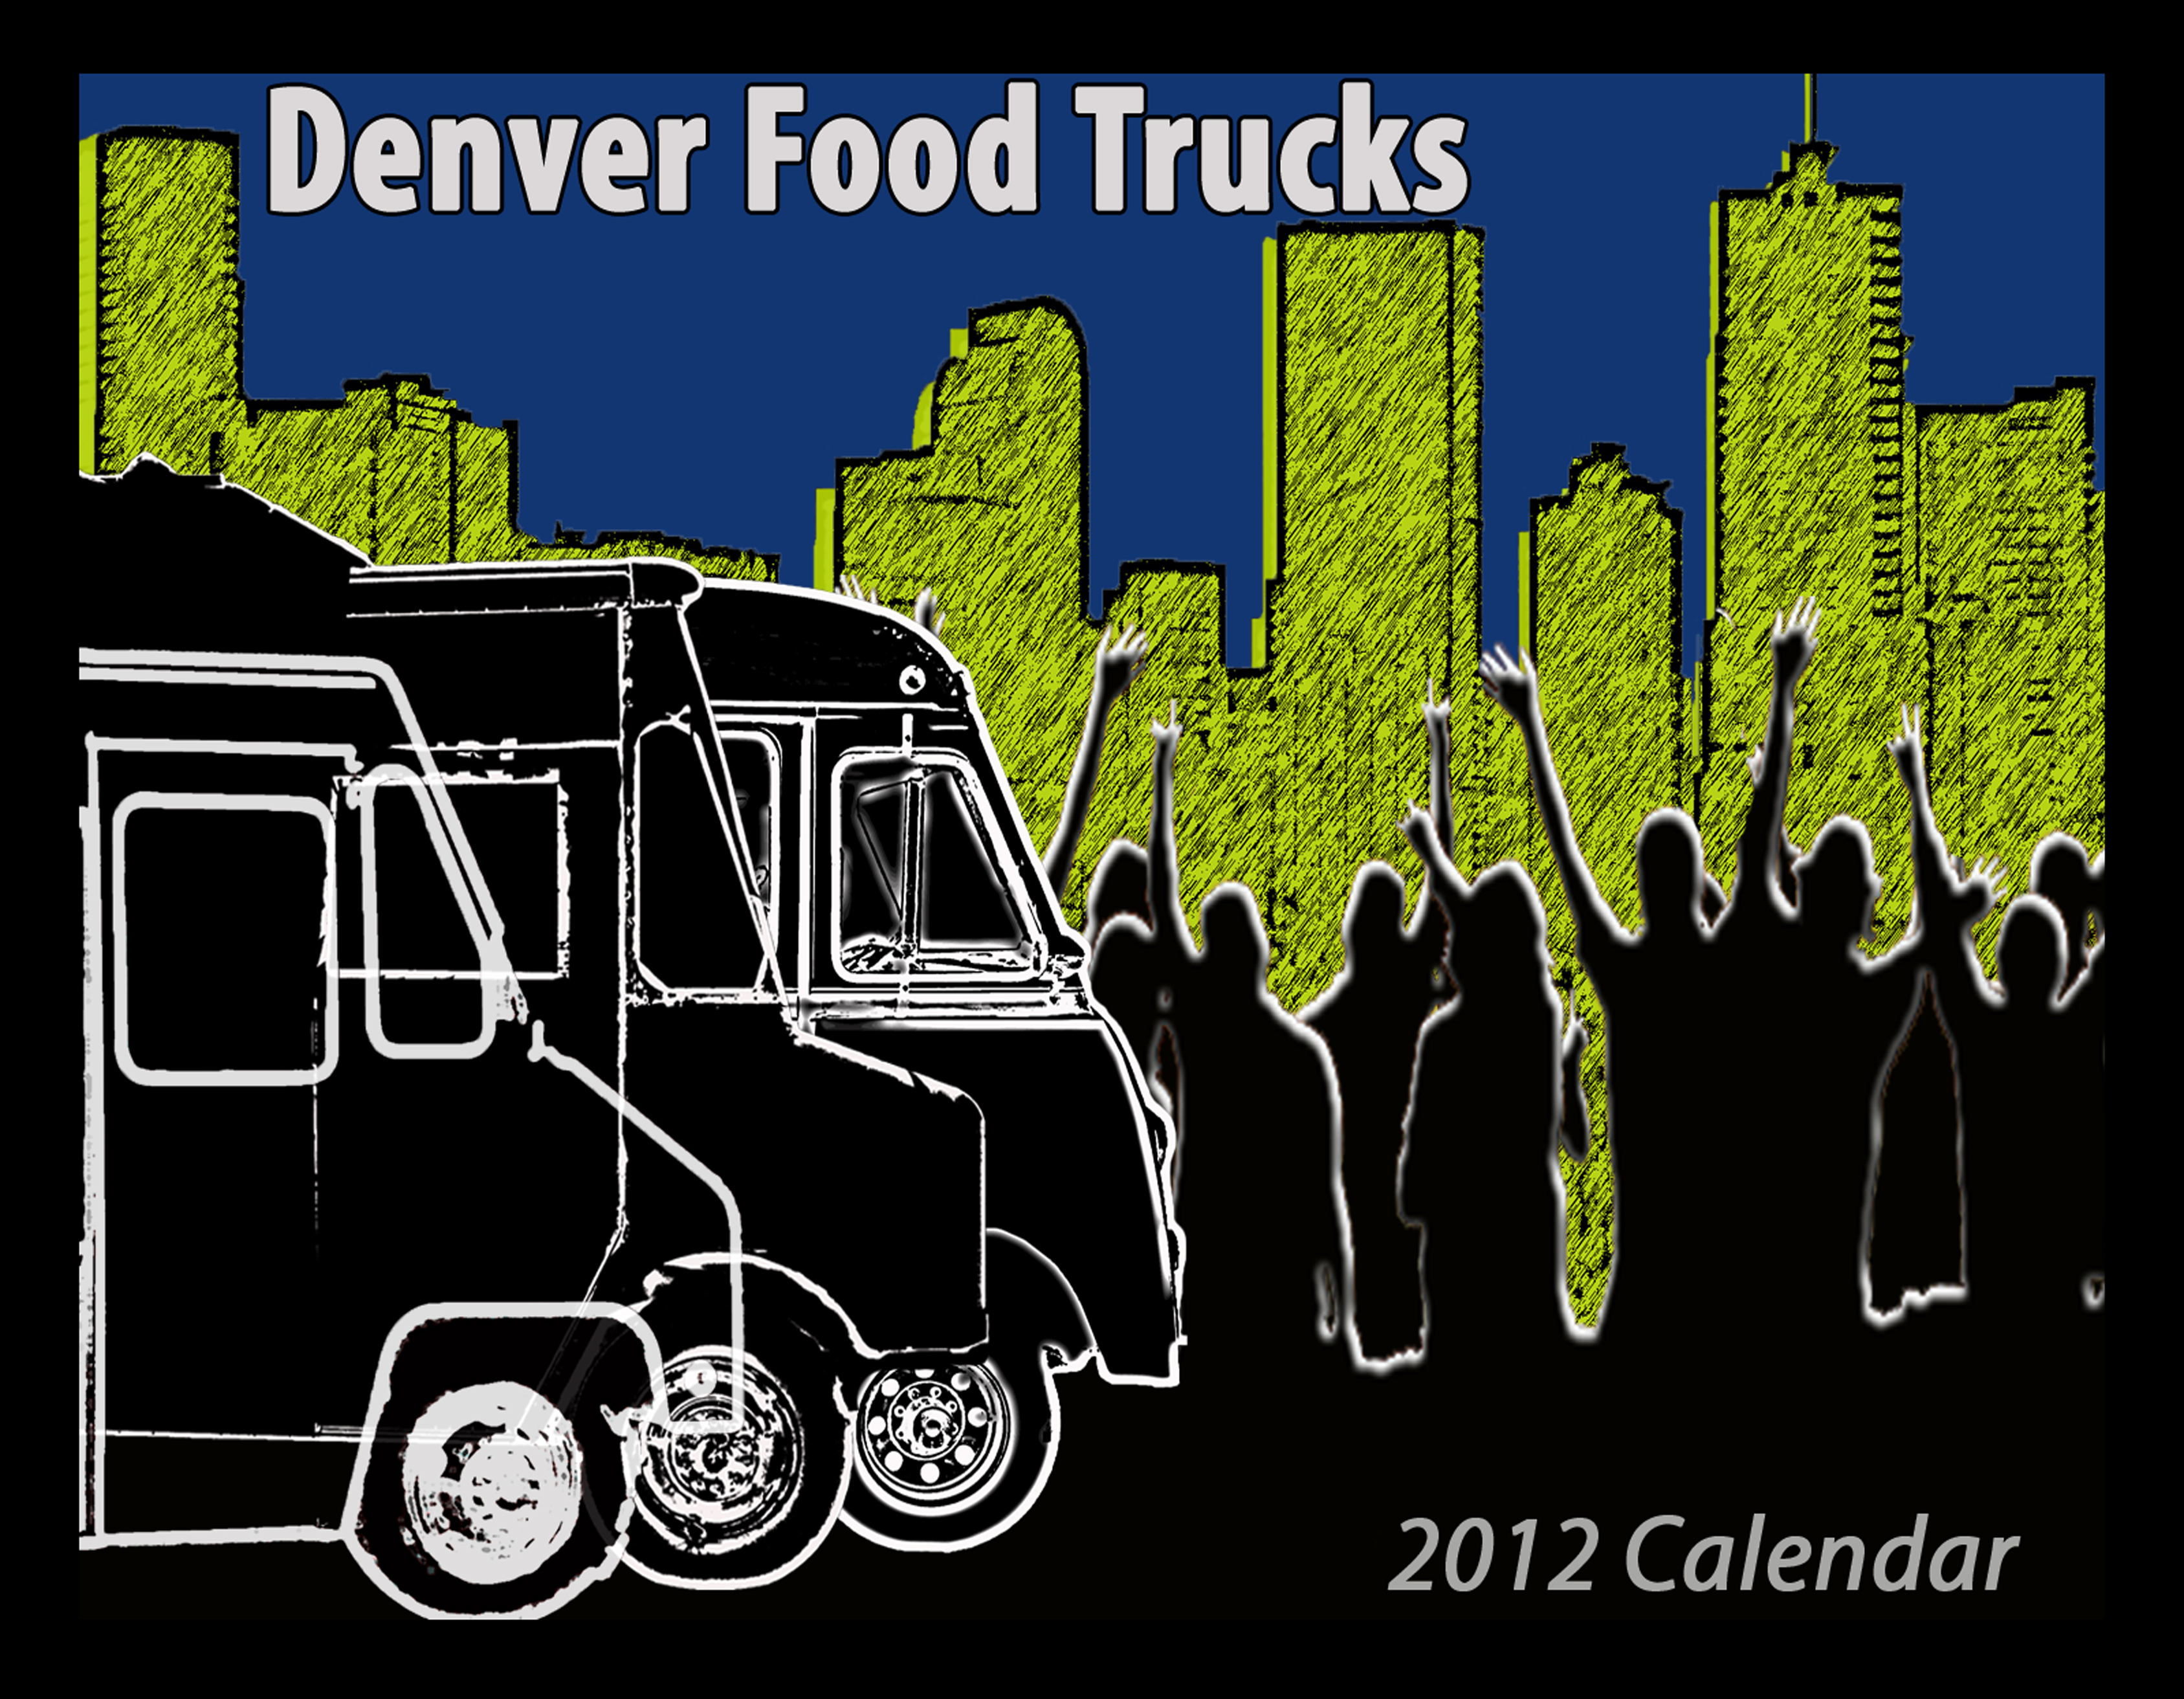 Win An Awesome Denver Food Truck Calendar!